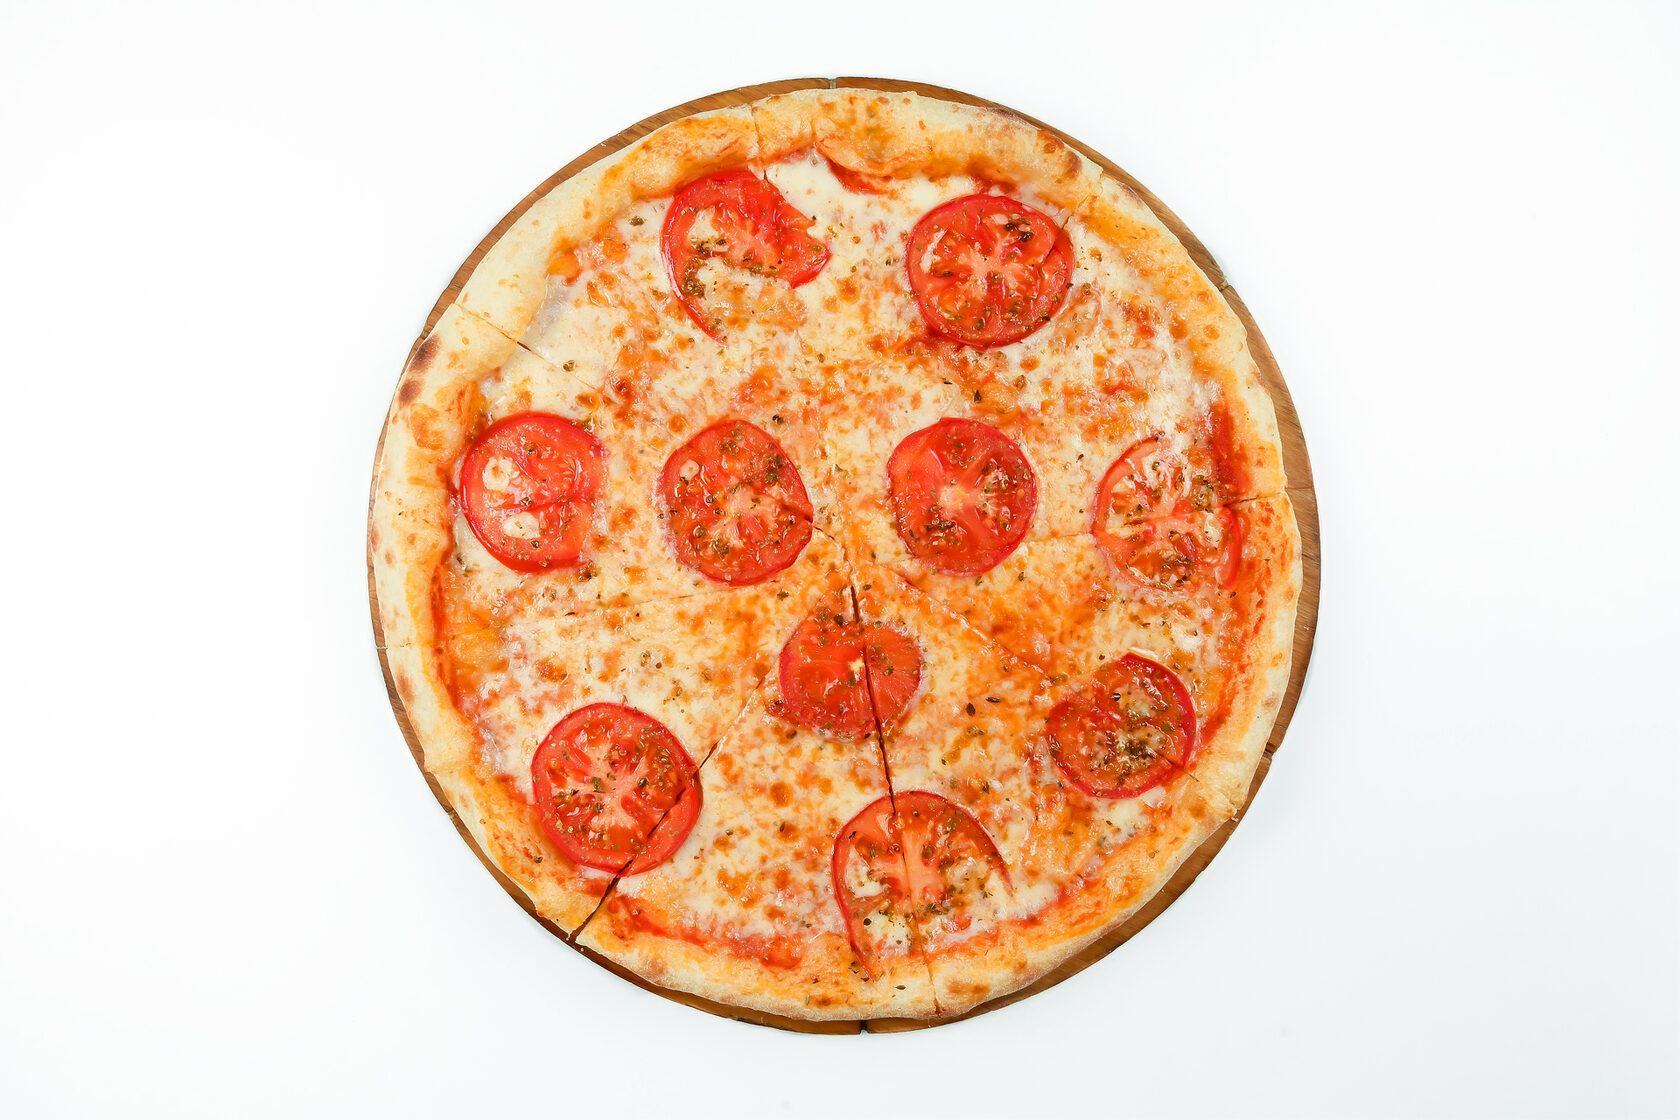 томатный соус на пиццу купить фото 95